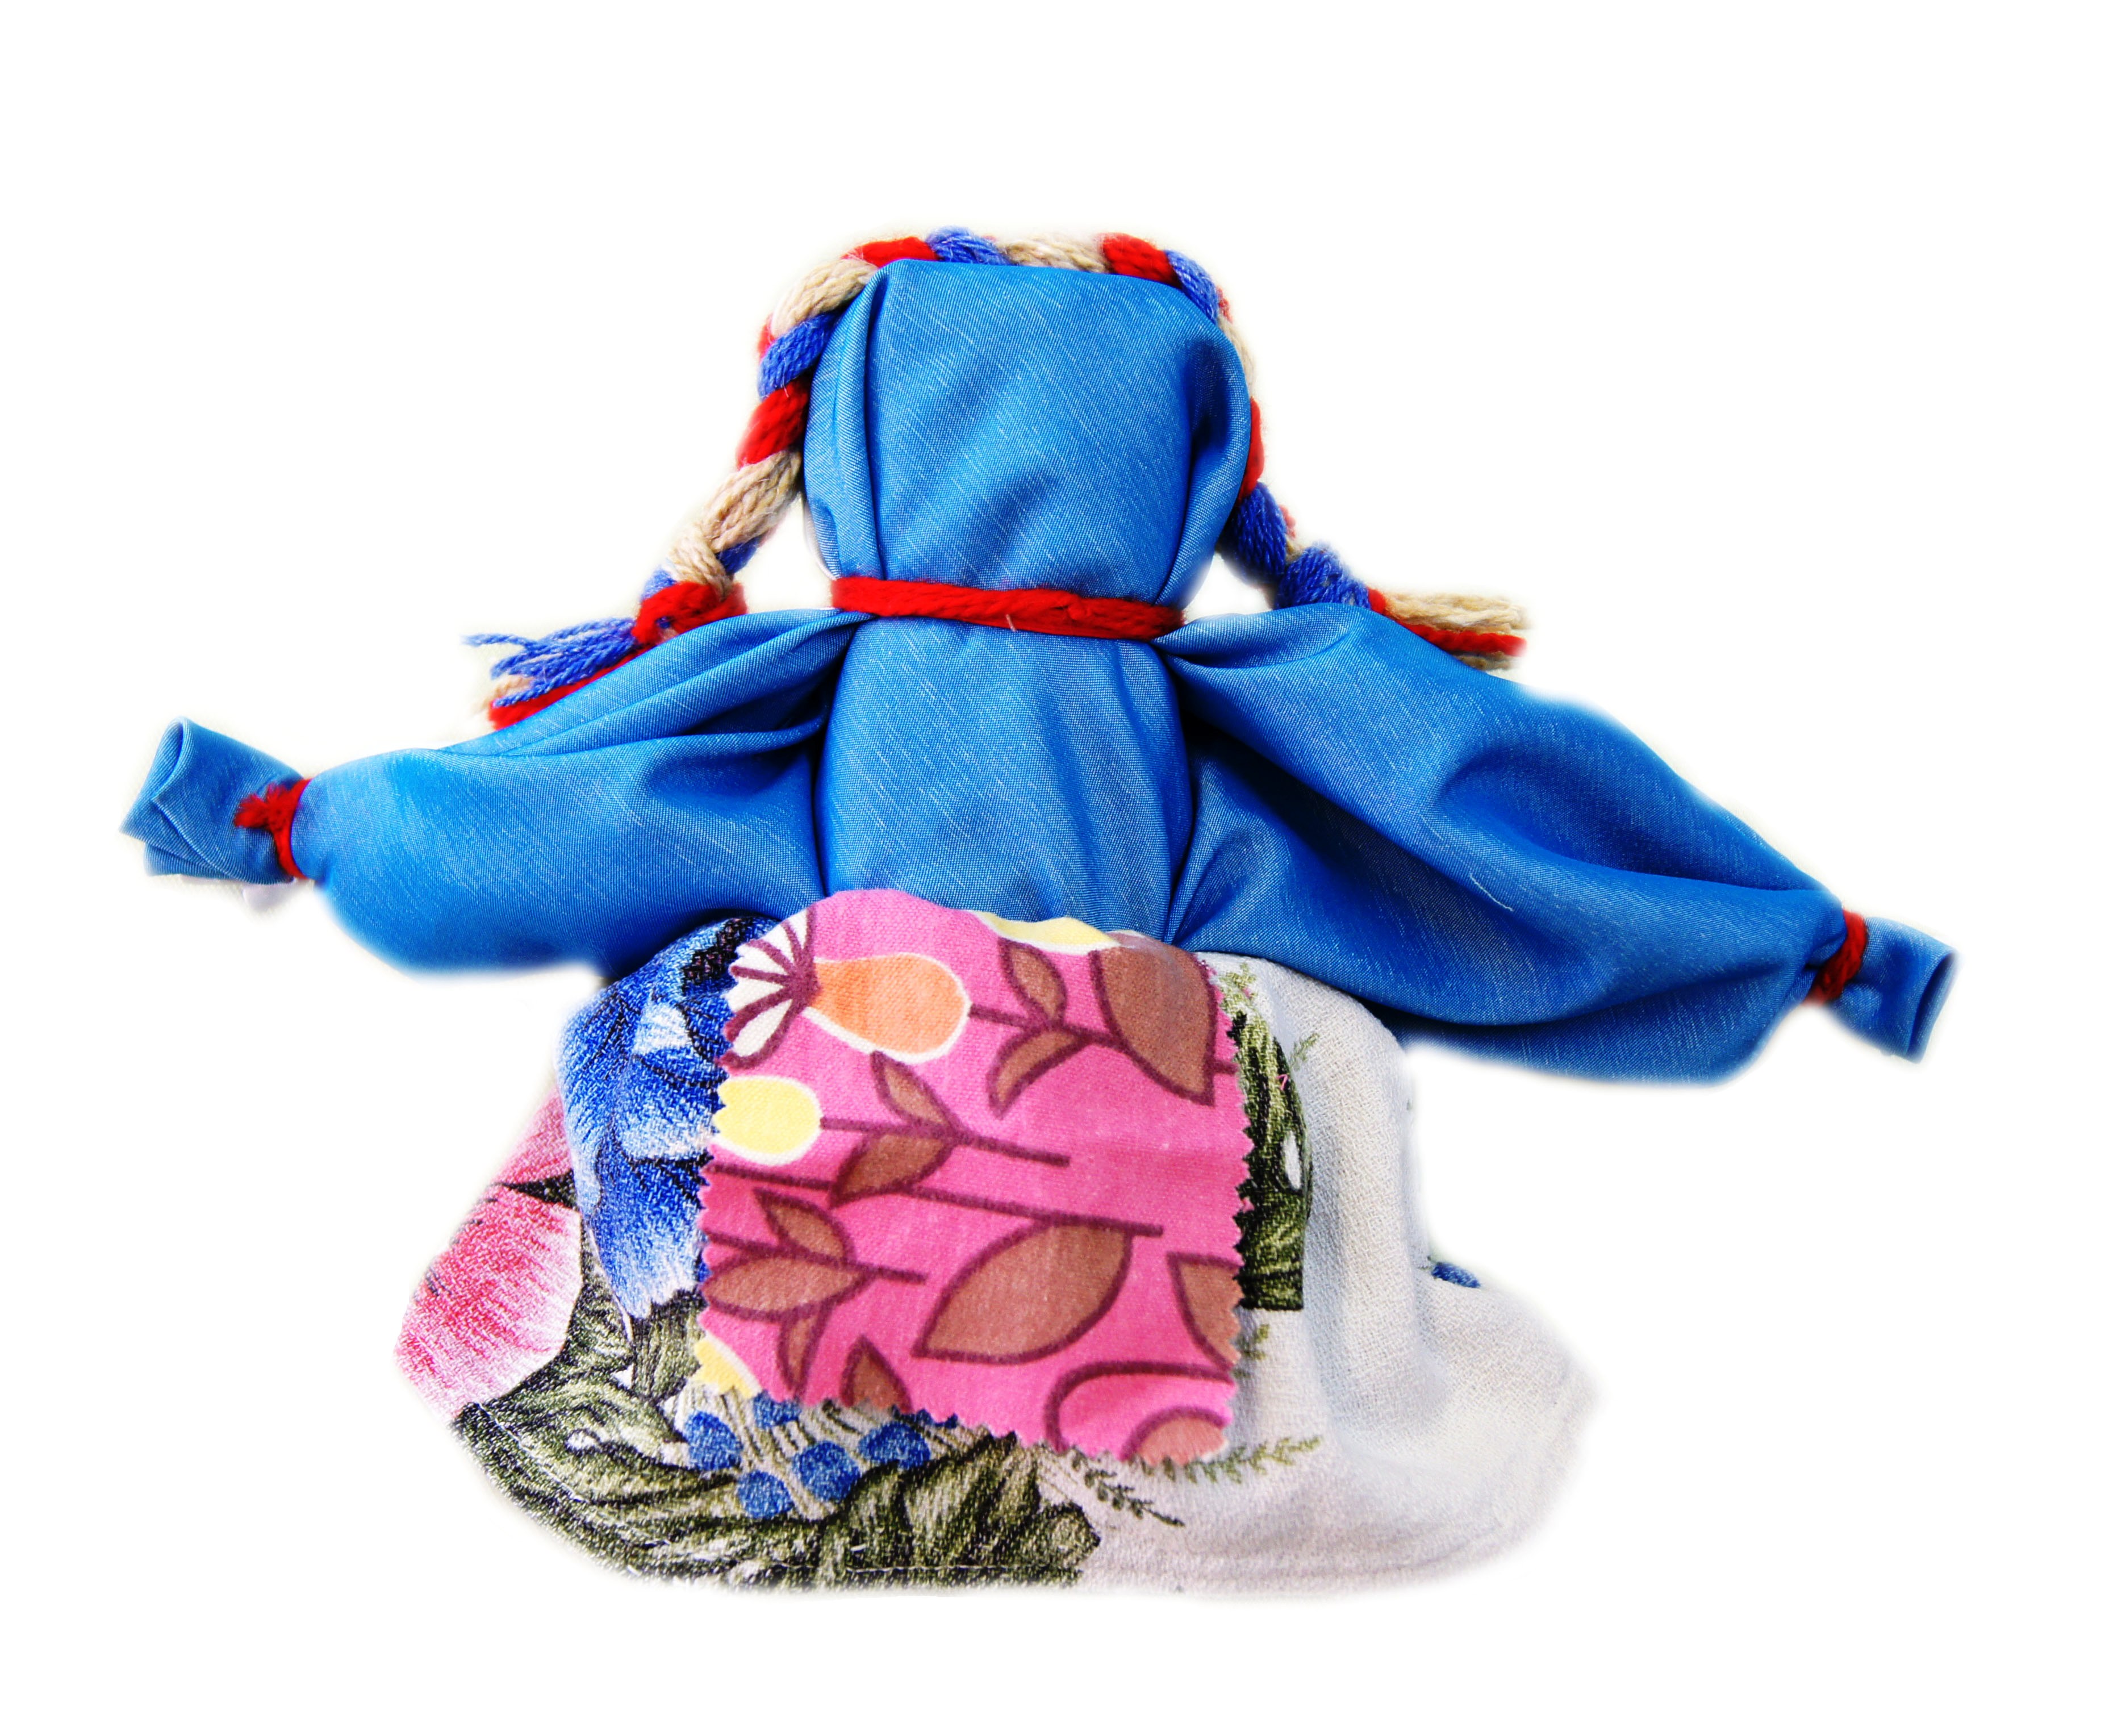 [Кукольный сундучок. Традиционная народная кукла своими руками] Берстенева, Е.В.; Догаева, Н.В.